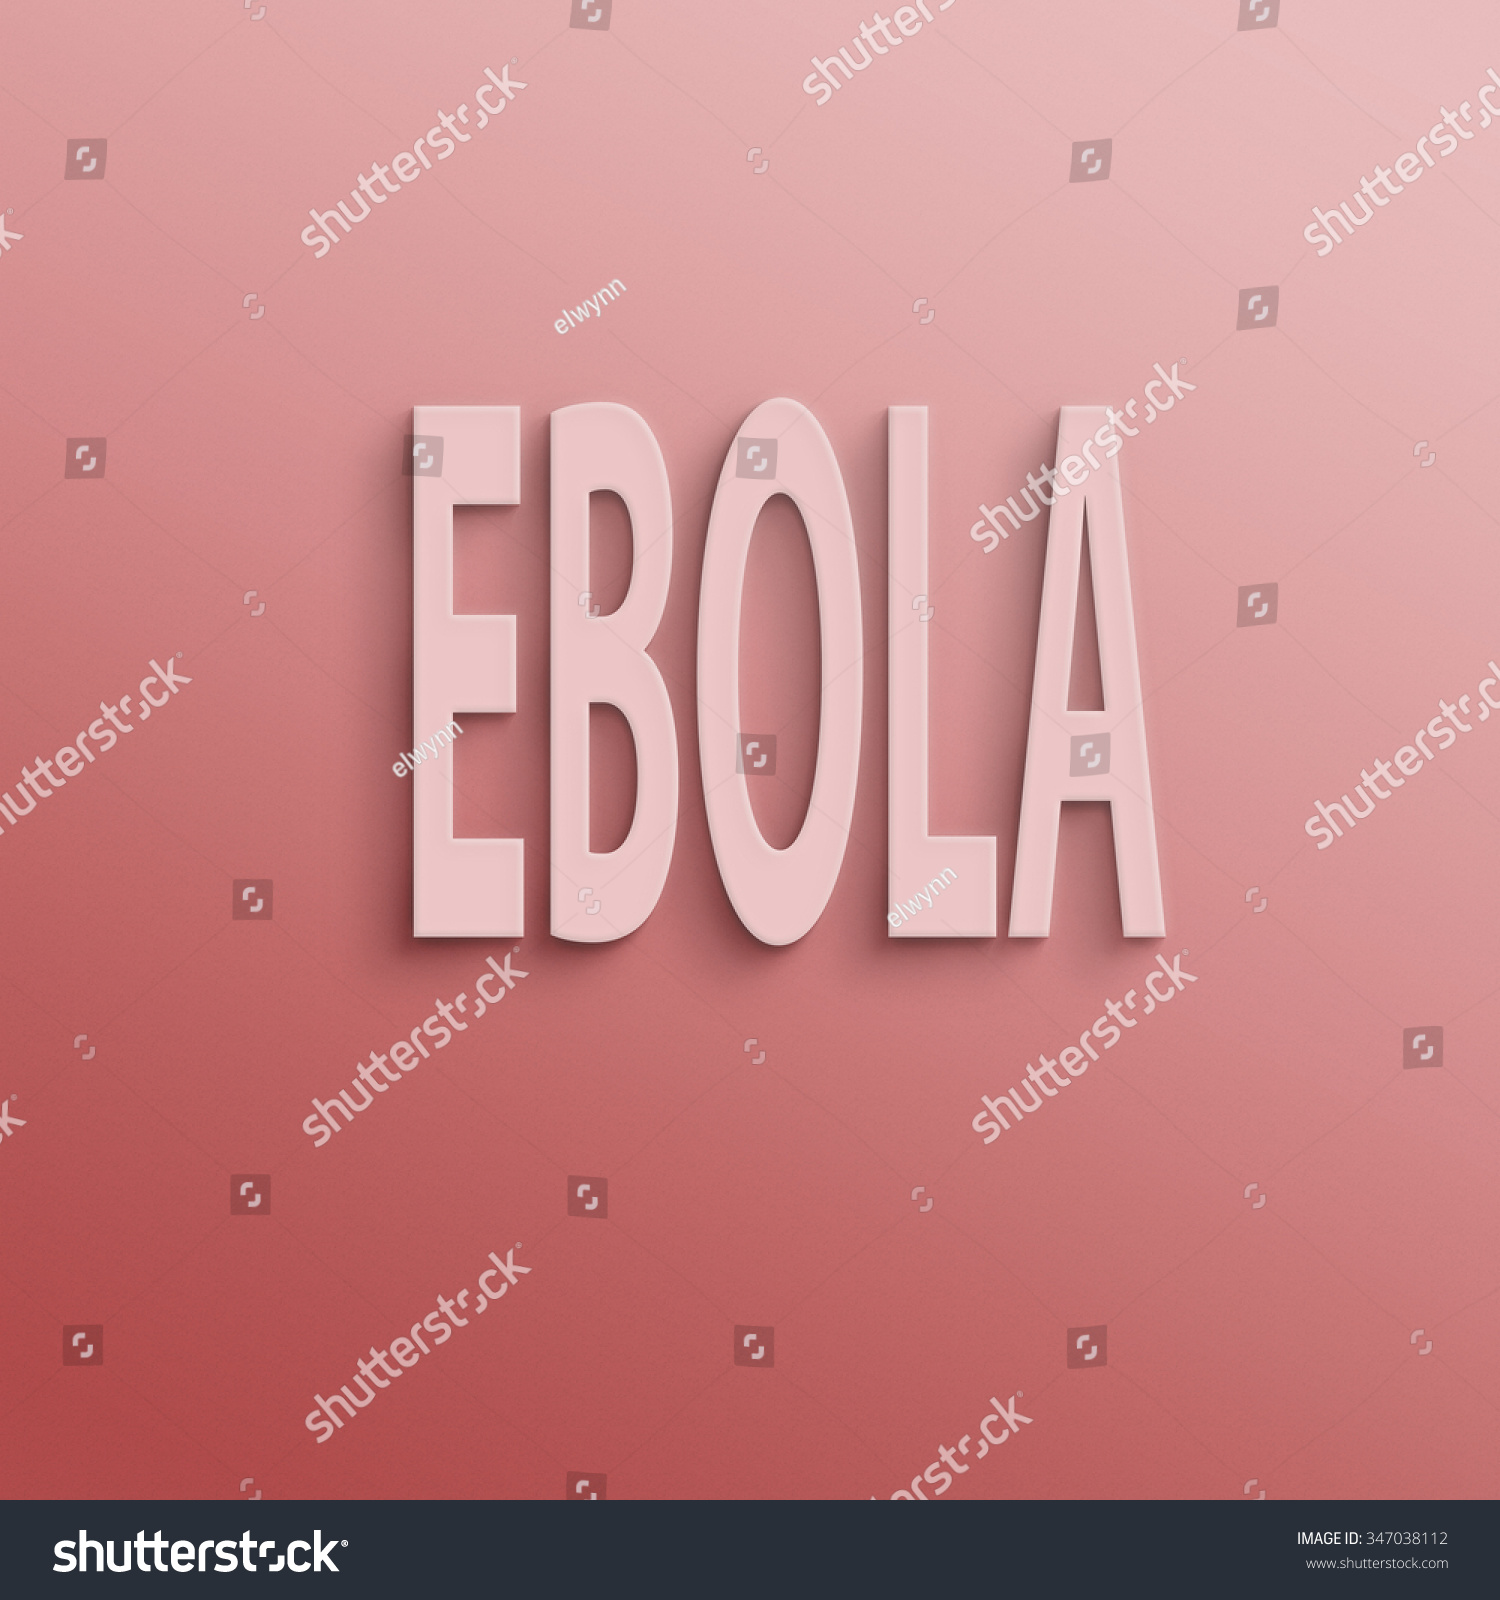 ebola paper